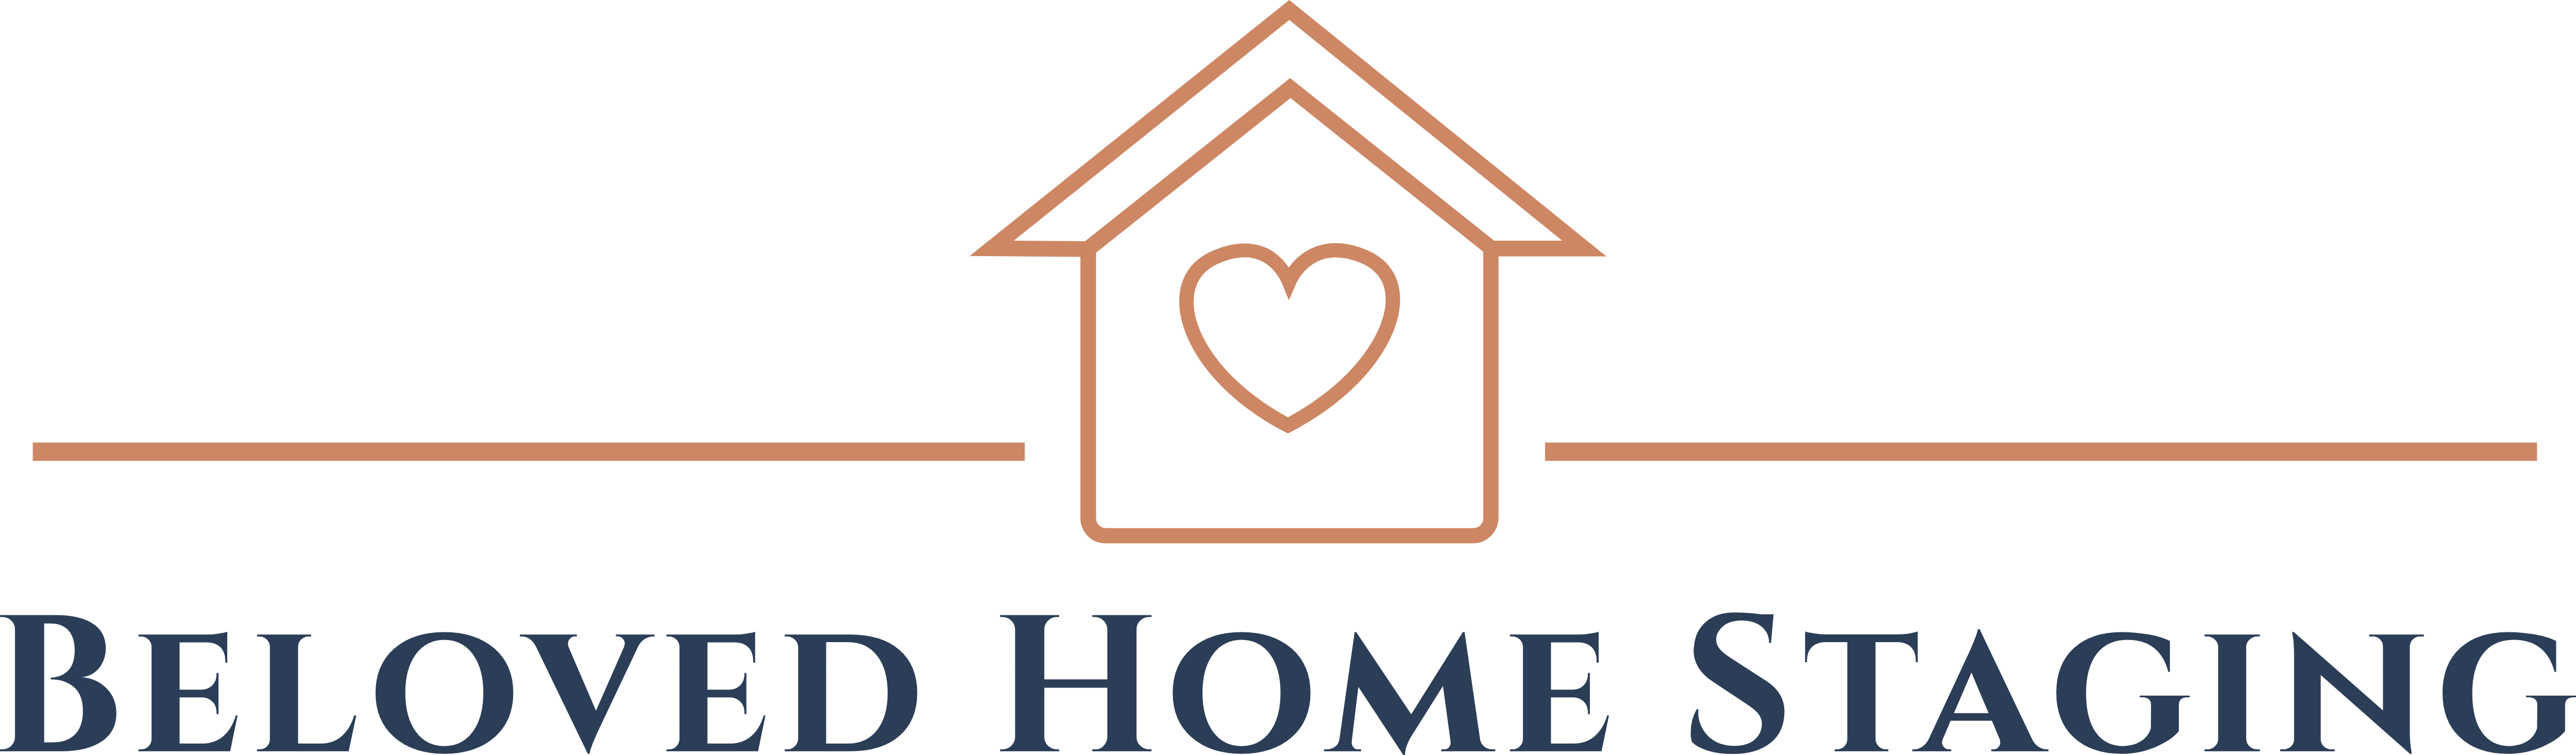 Beloved Home Staging and Designs, LLC Logo